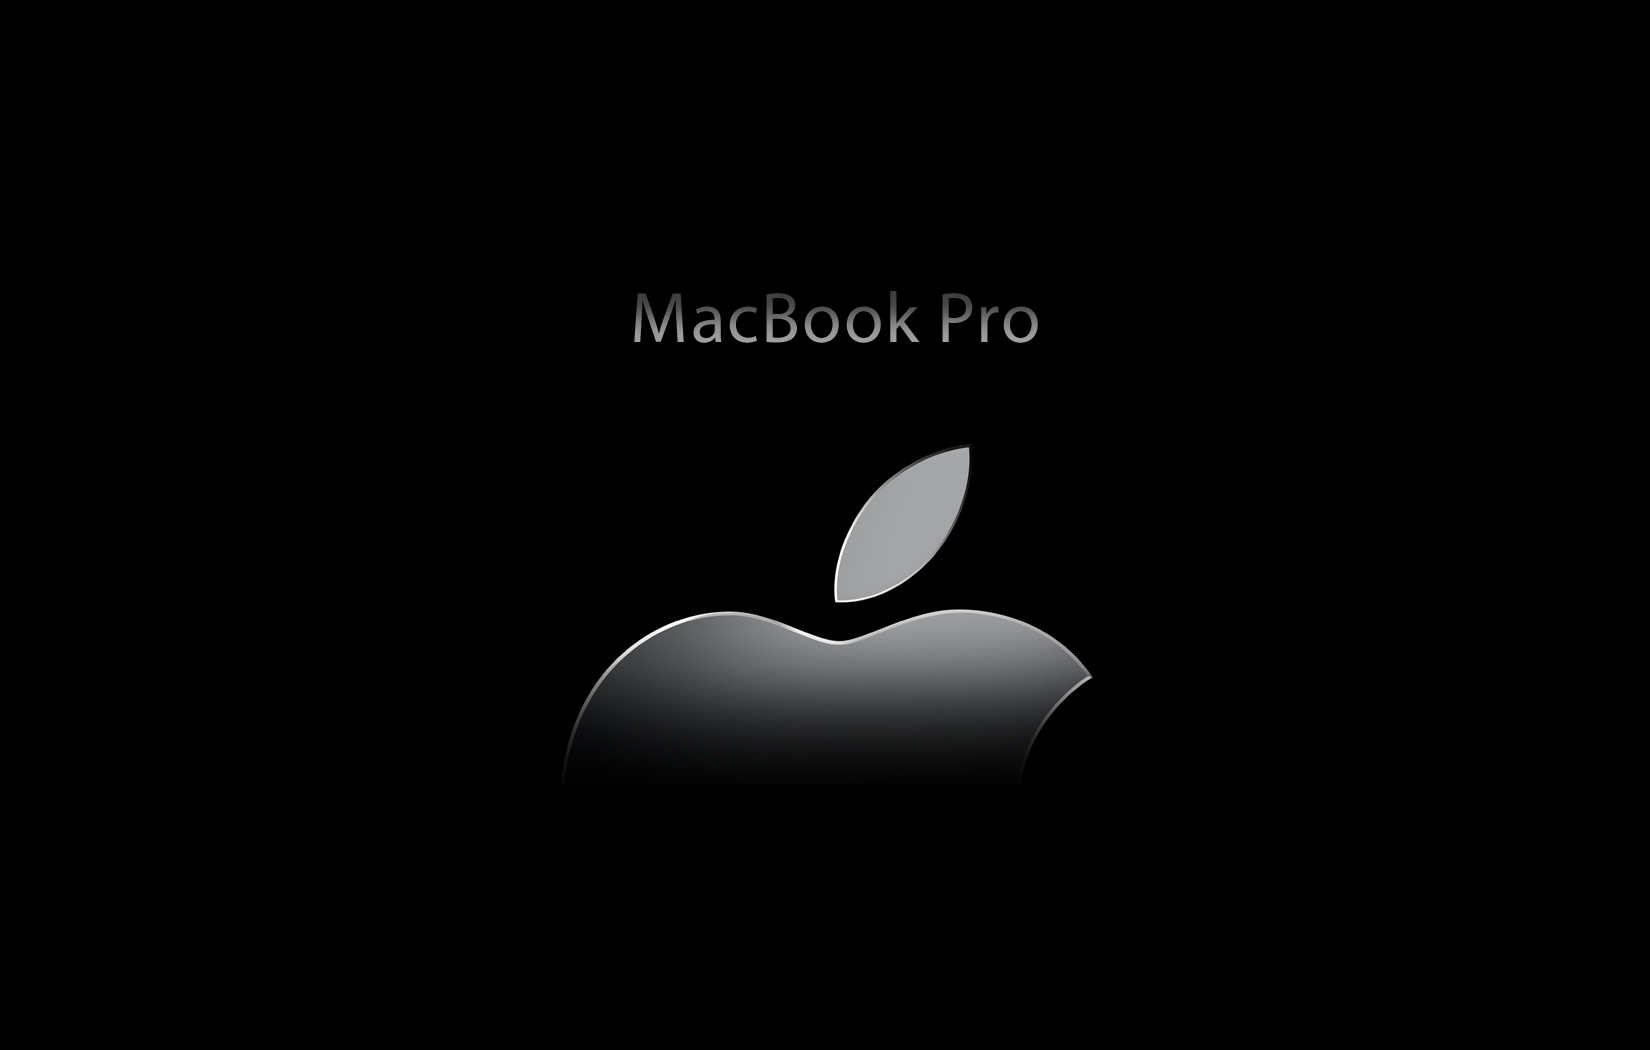 macbook prowallpapers for macbook pro 13wallpapers for macbook pro